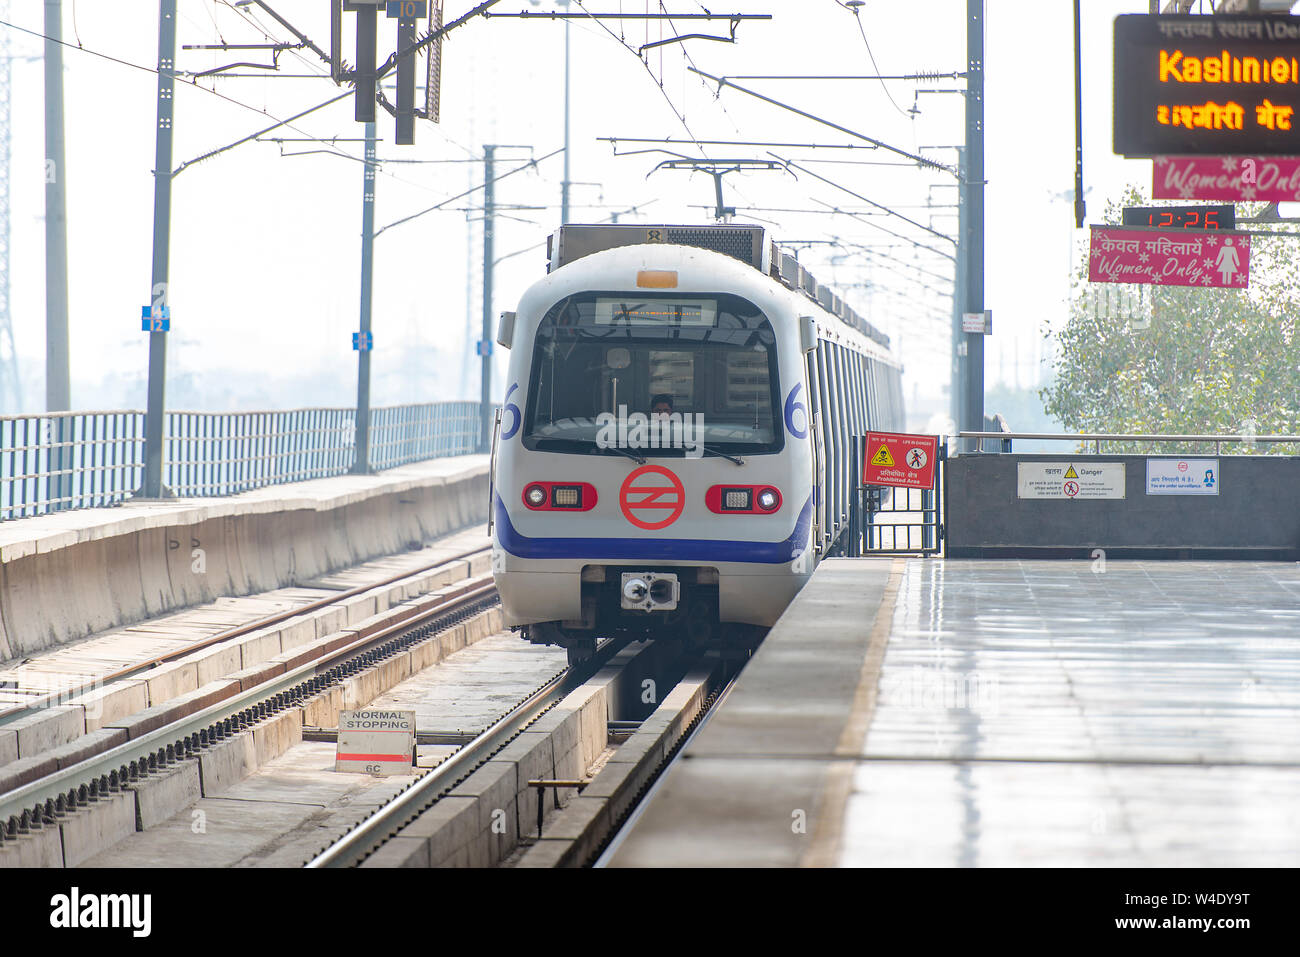 Nuova Delhi - Feb 24: Nuova Delhi La stazione della metropolitana e di un moderno treno il 24 febbraio. 2018 in India Foto Stock